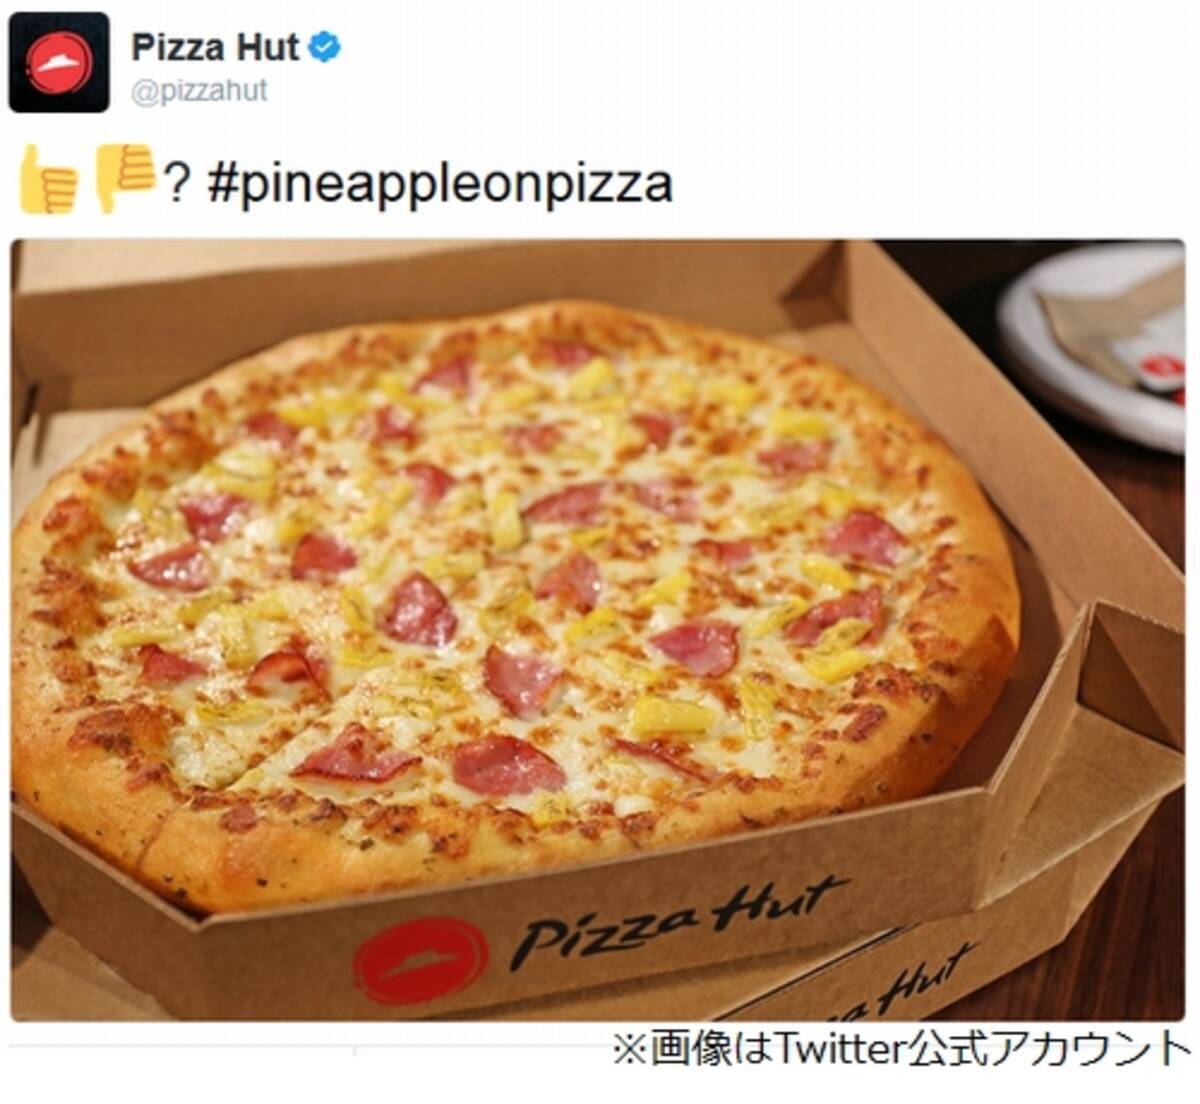 パイナップルピザ禁止論争にピザハット参戦 17年2月25日 エキサイトニュース